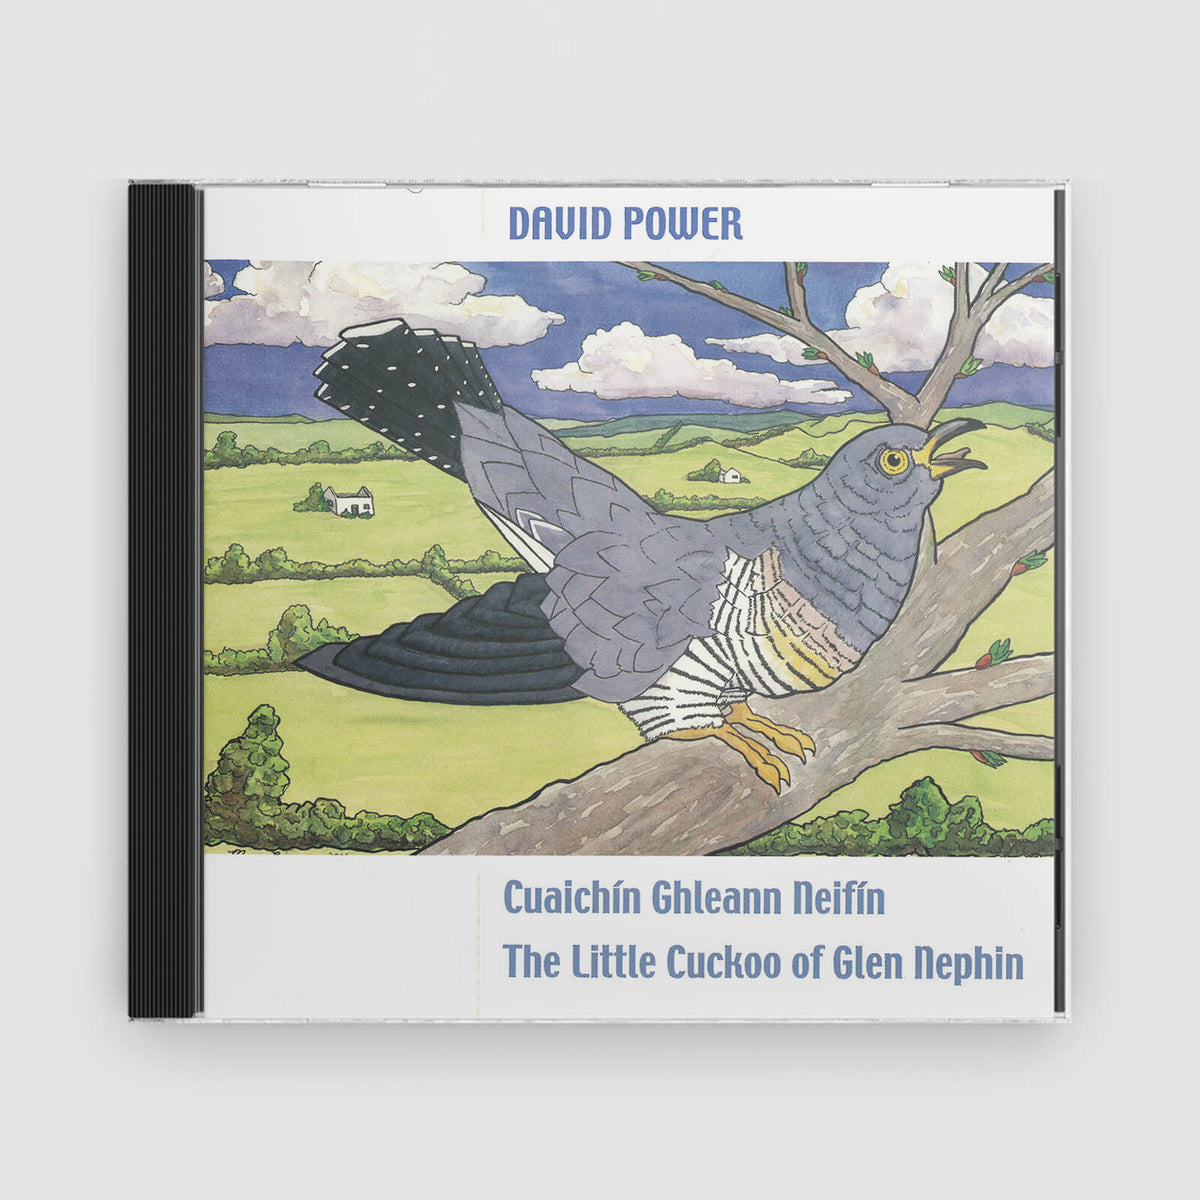 David Power : Cuaichín Ghleann Neifin (The Little Cuckoo Of Glen Nephin)